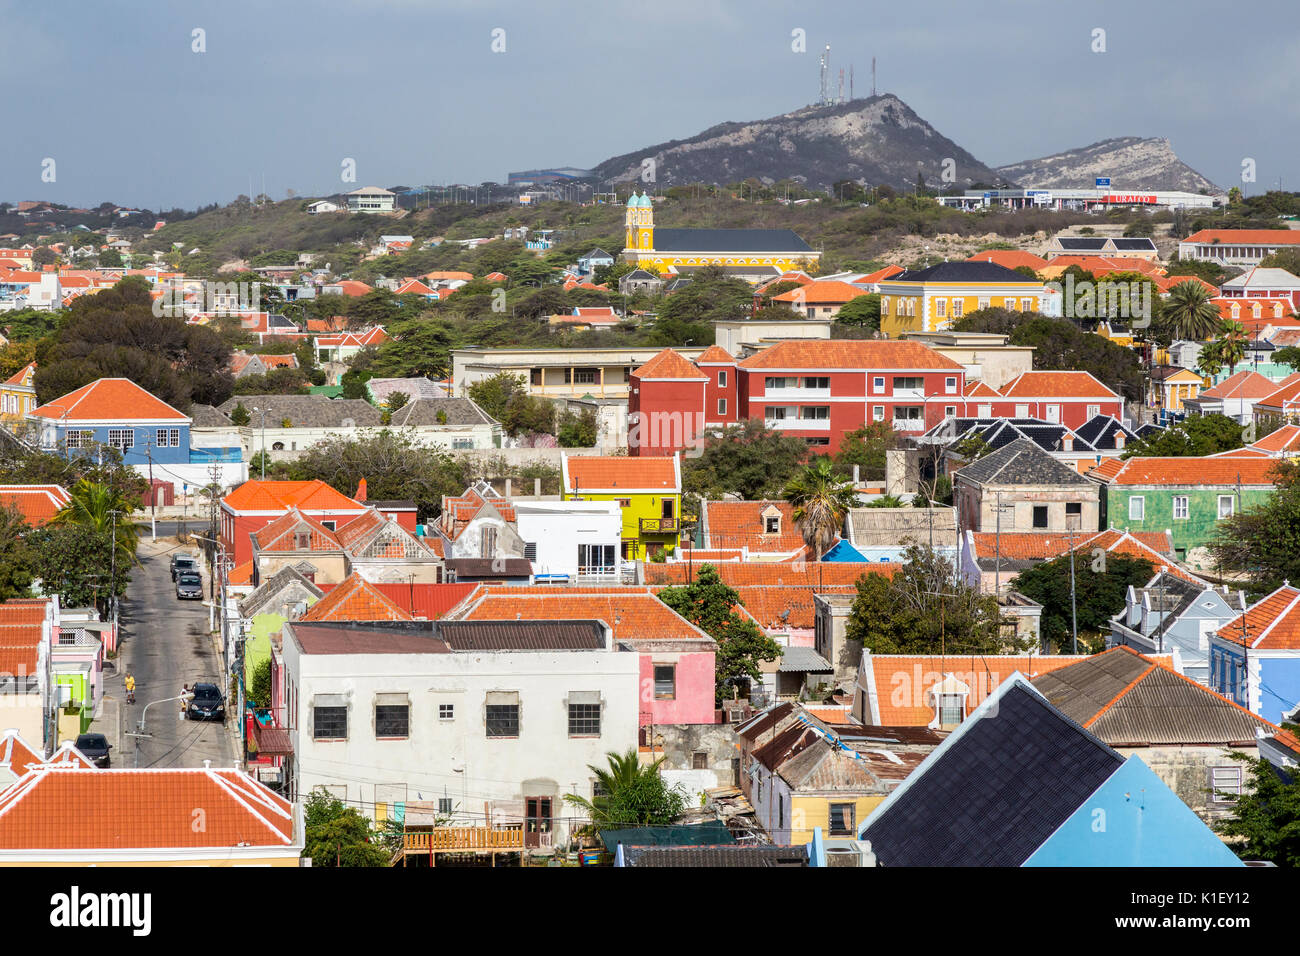 Willemstad, Curacao, Kleinen Antillen. Blick auf die Stadt. Stockfoto